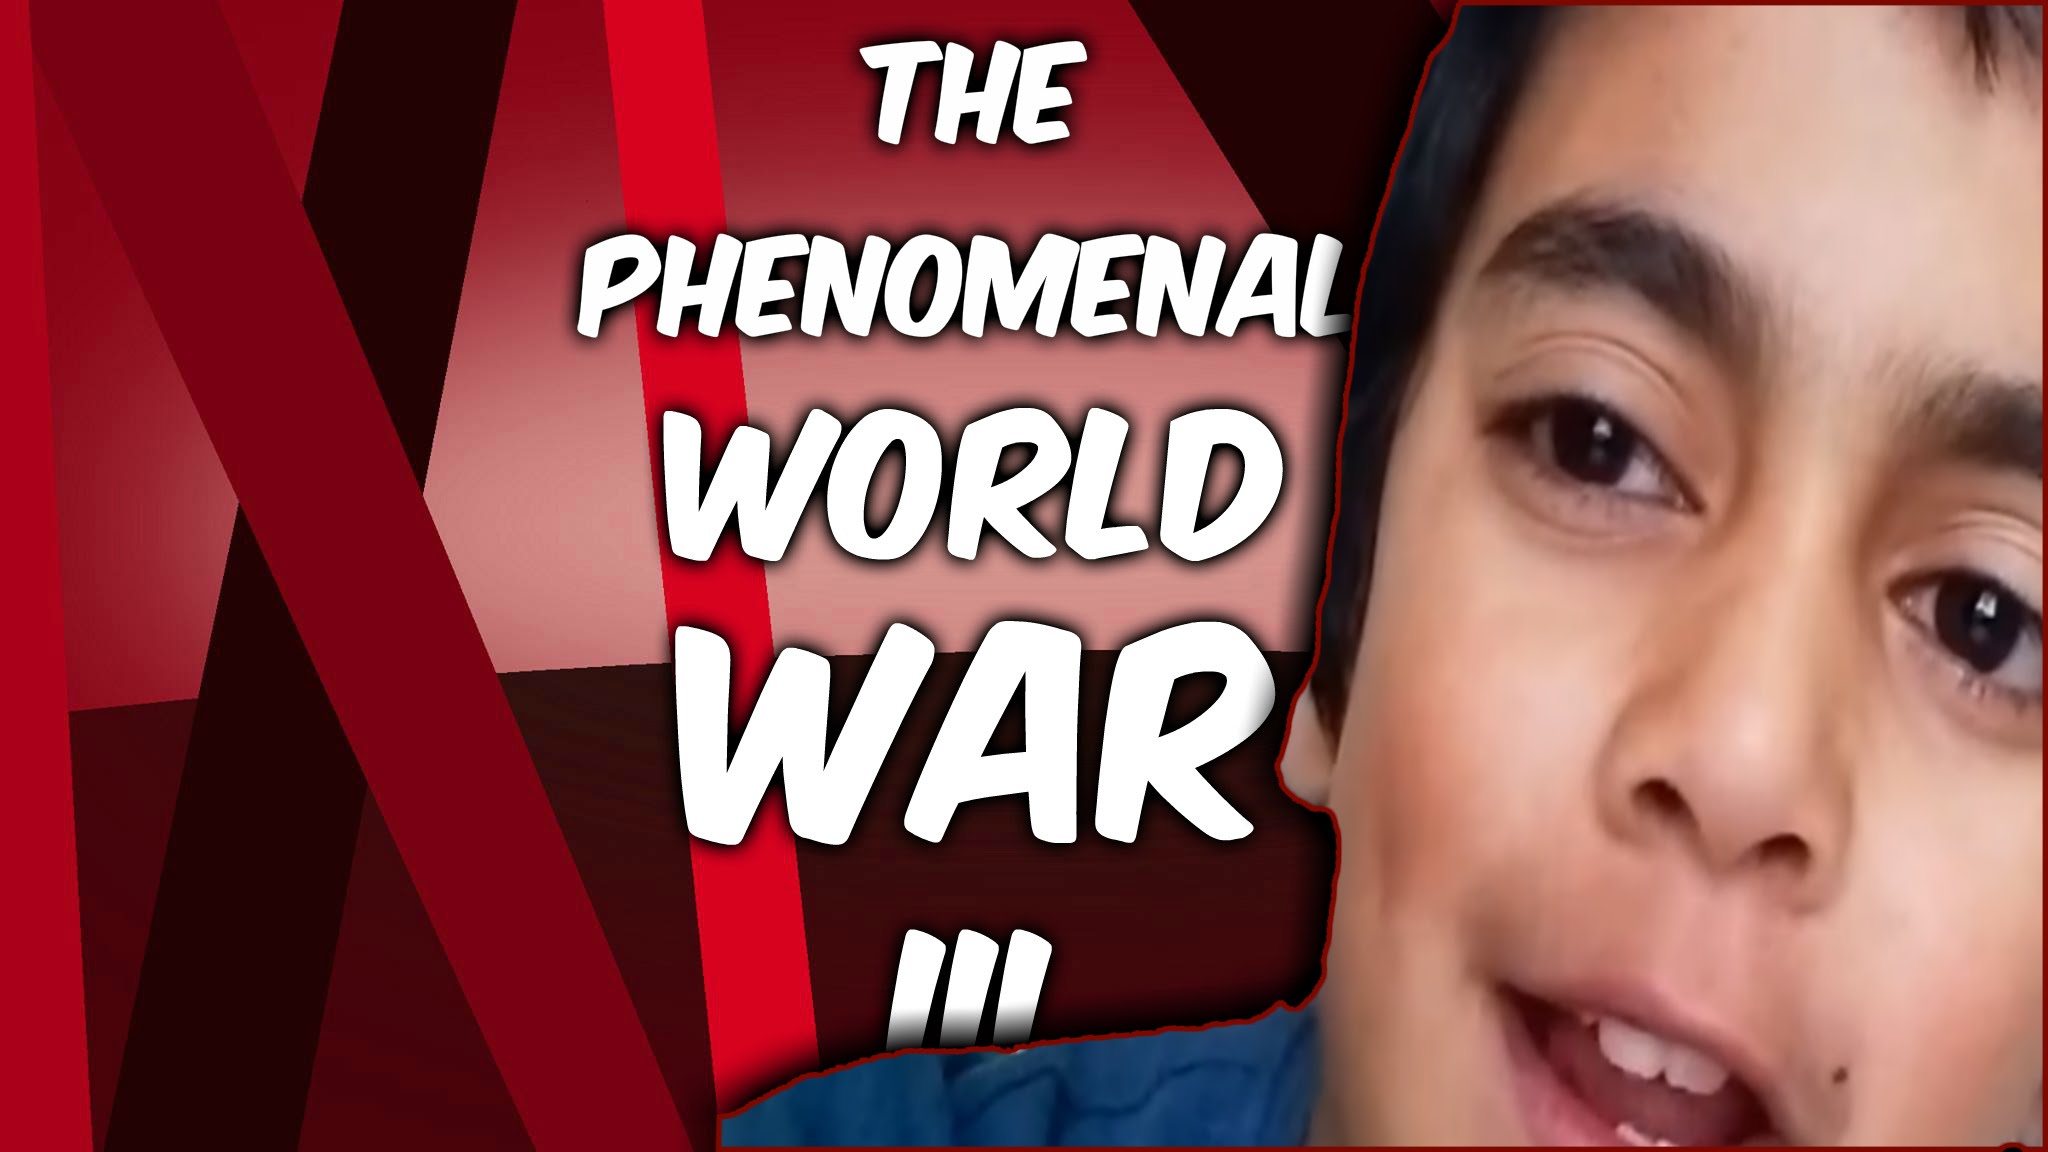 A Kid Starts World War 3